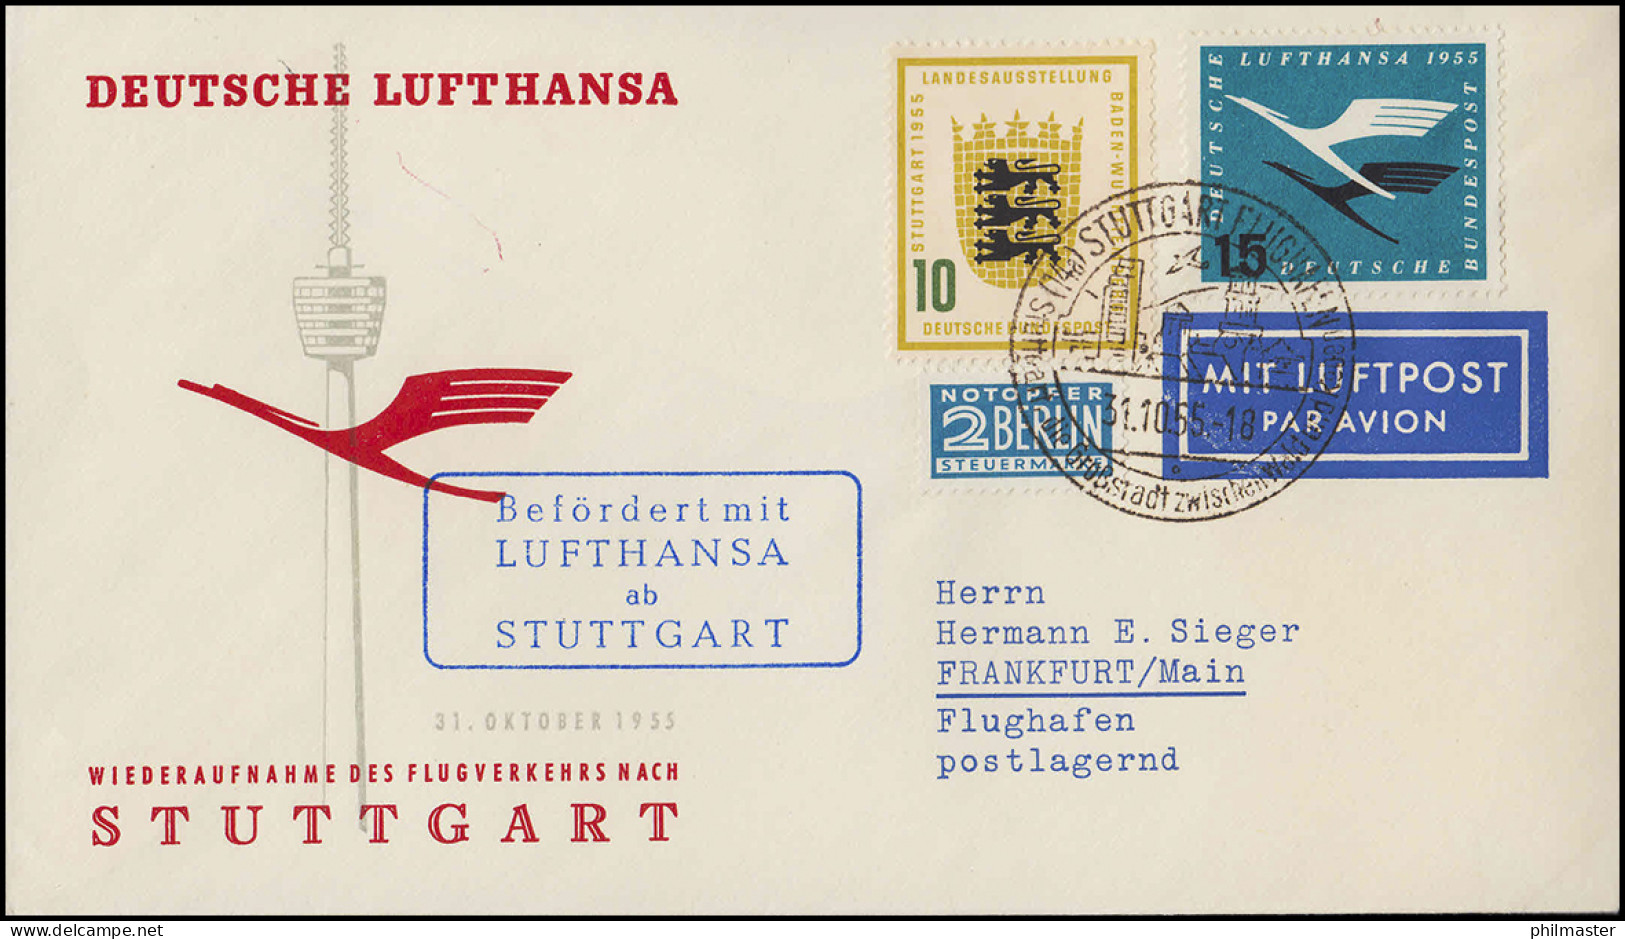 Luftpost Lufthansa Wiederaufnahme Inland Flugverkehr Nach Stuttgart, 31.10.1955 - Eerste Vluchten